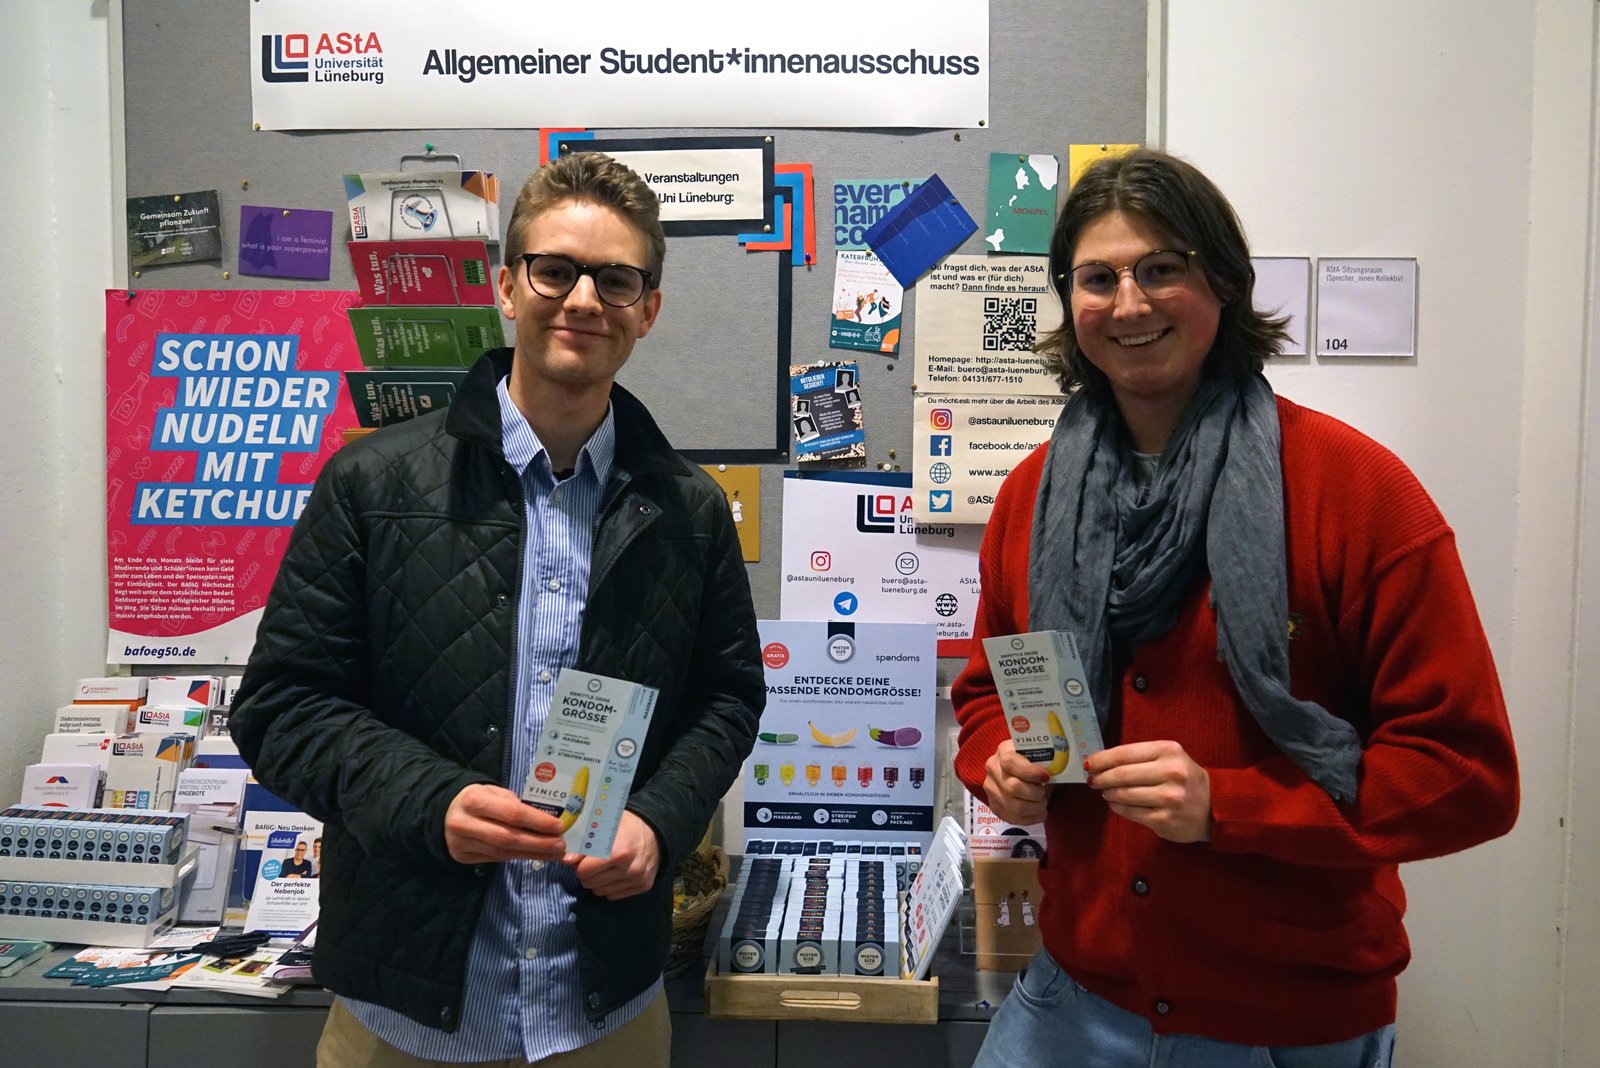 Луїс зі Spondoms (ліворуч) відкриває безкоштовний автомат з презервативами разом з Максом з AStA Університету Леуфана в Люнебурзі (праворуч).